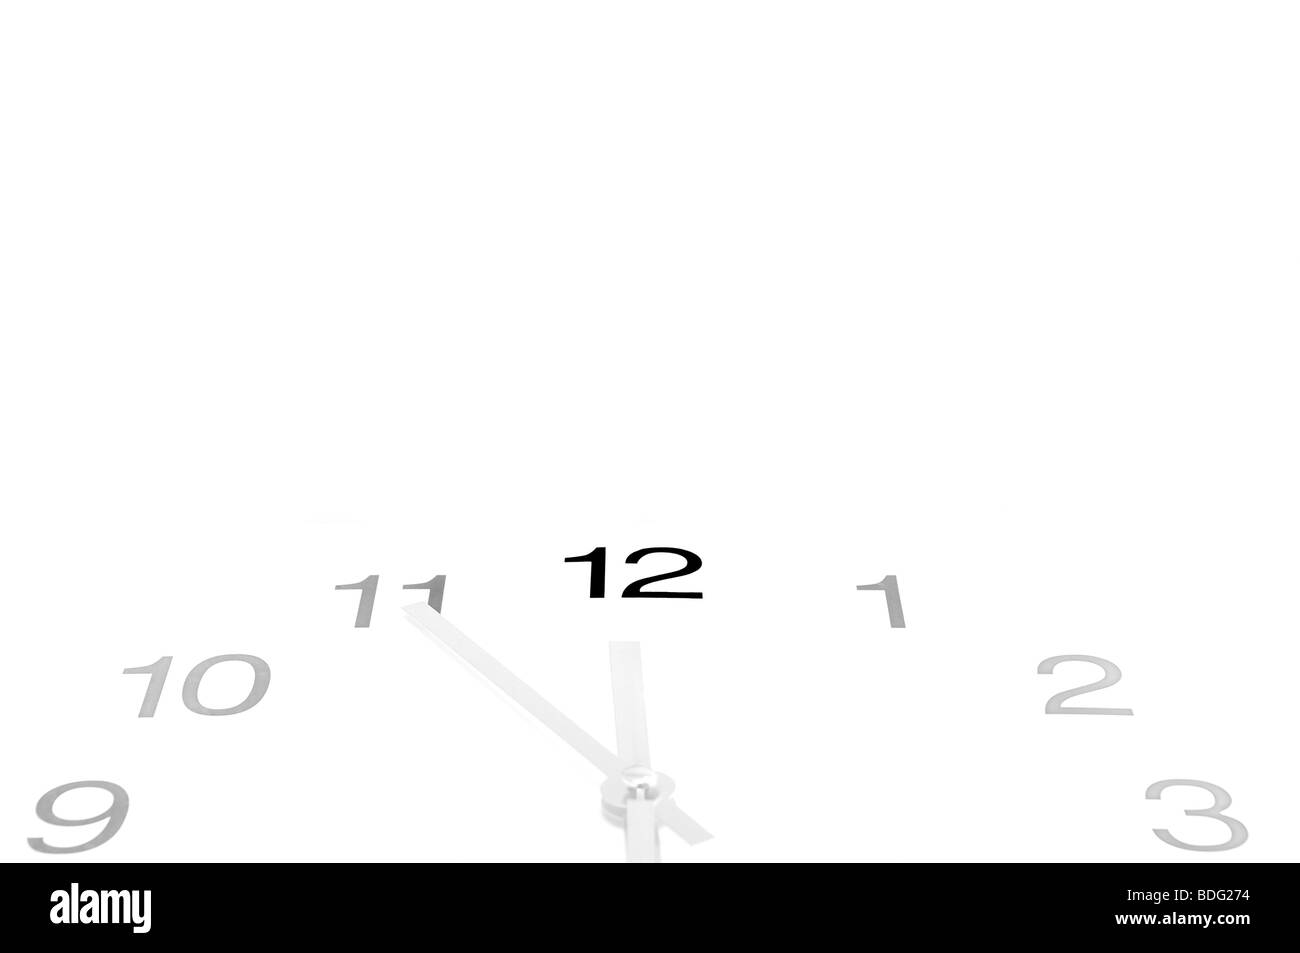 Reloj mostrando el tiempo de cinco a doce, conceptual por ser casi mediodía, espacio libre para el texto Foto de stock